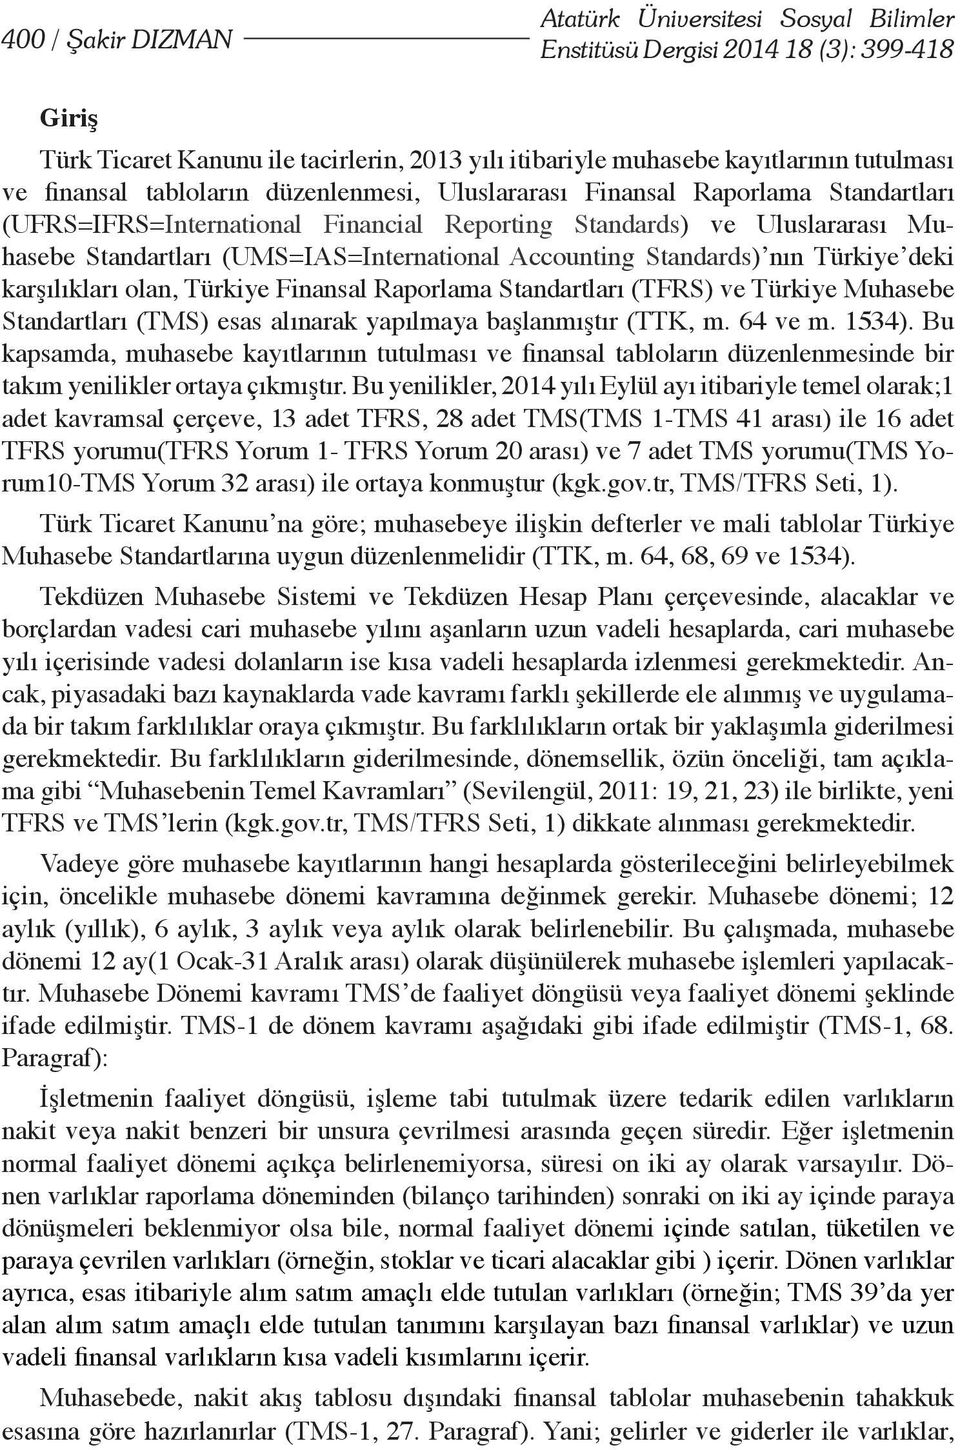 Standards) nın Türkiye deki karşılıkları olan, Türkiye Finansal Raporlama Standartları (TFRS) ve Türkiye Muhasebe Standartları (TMS) esas alınarak yapılmaya başlanmıştır (TTK, m. 64 ve m. 1534).